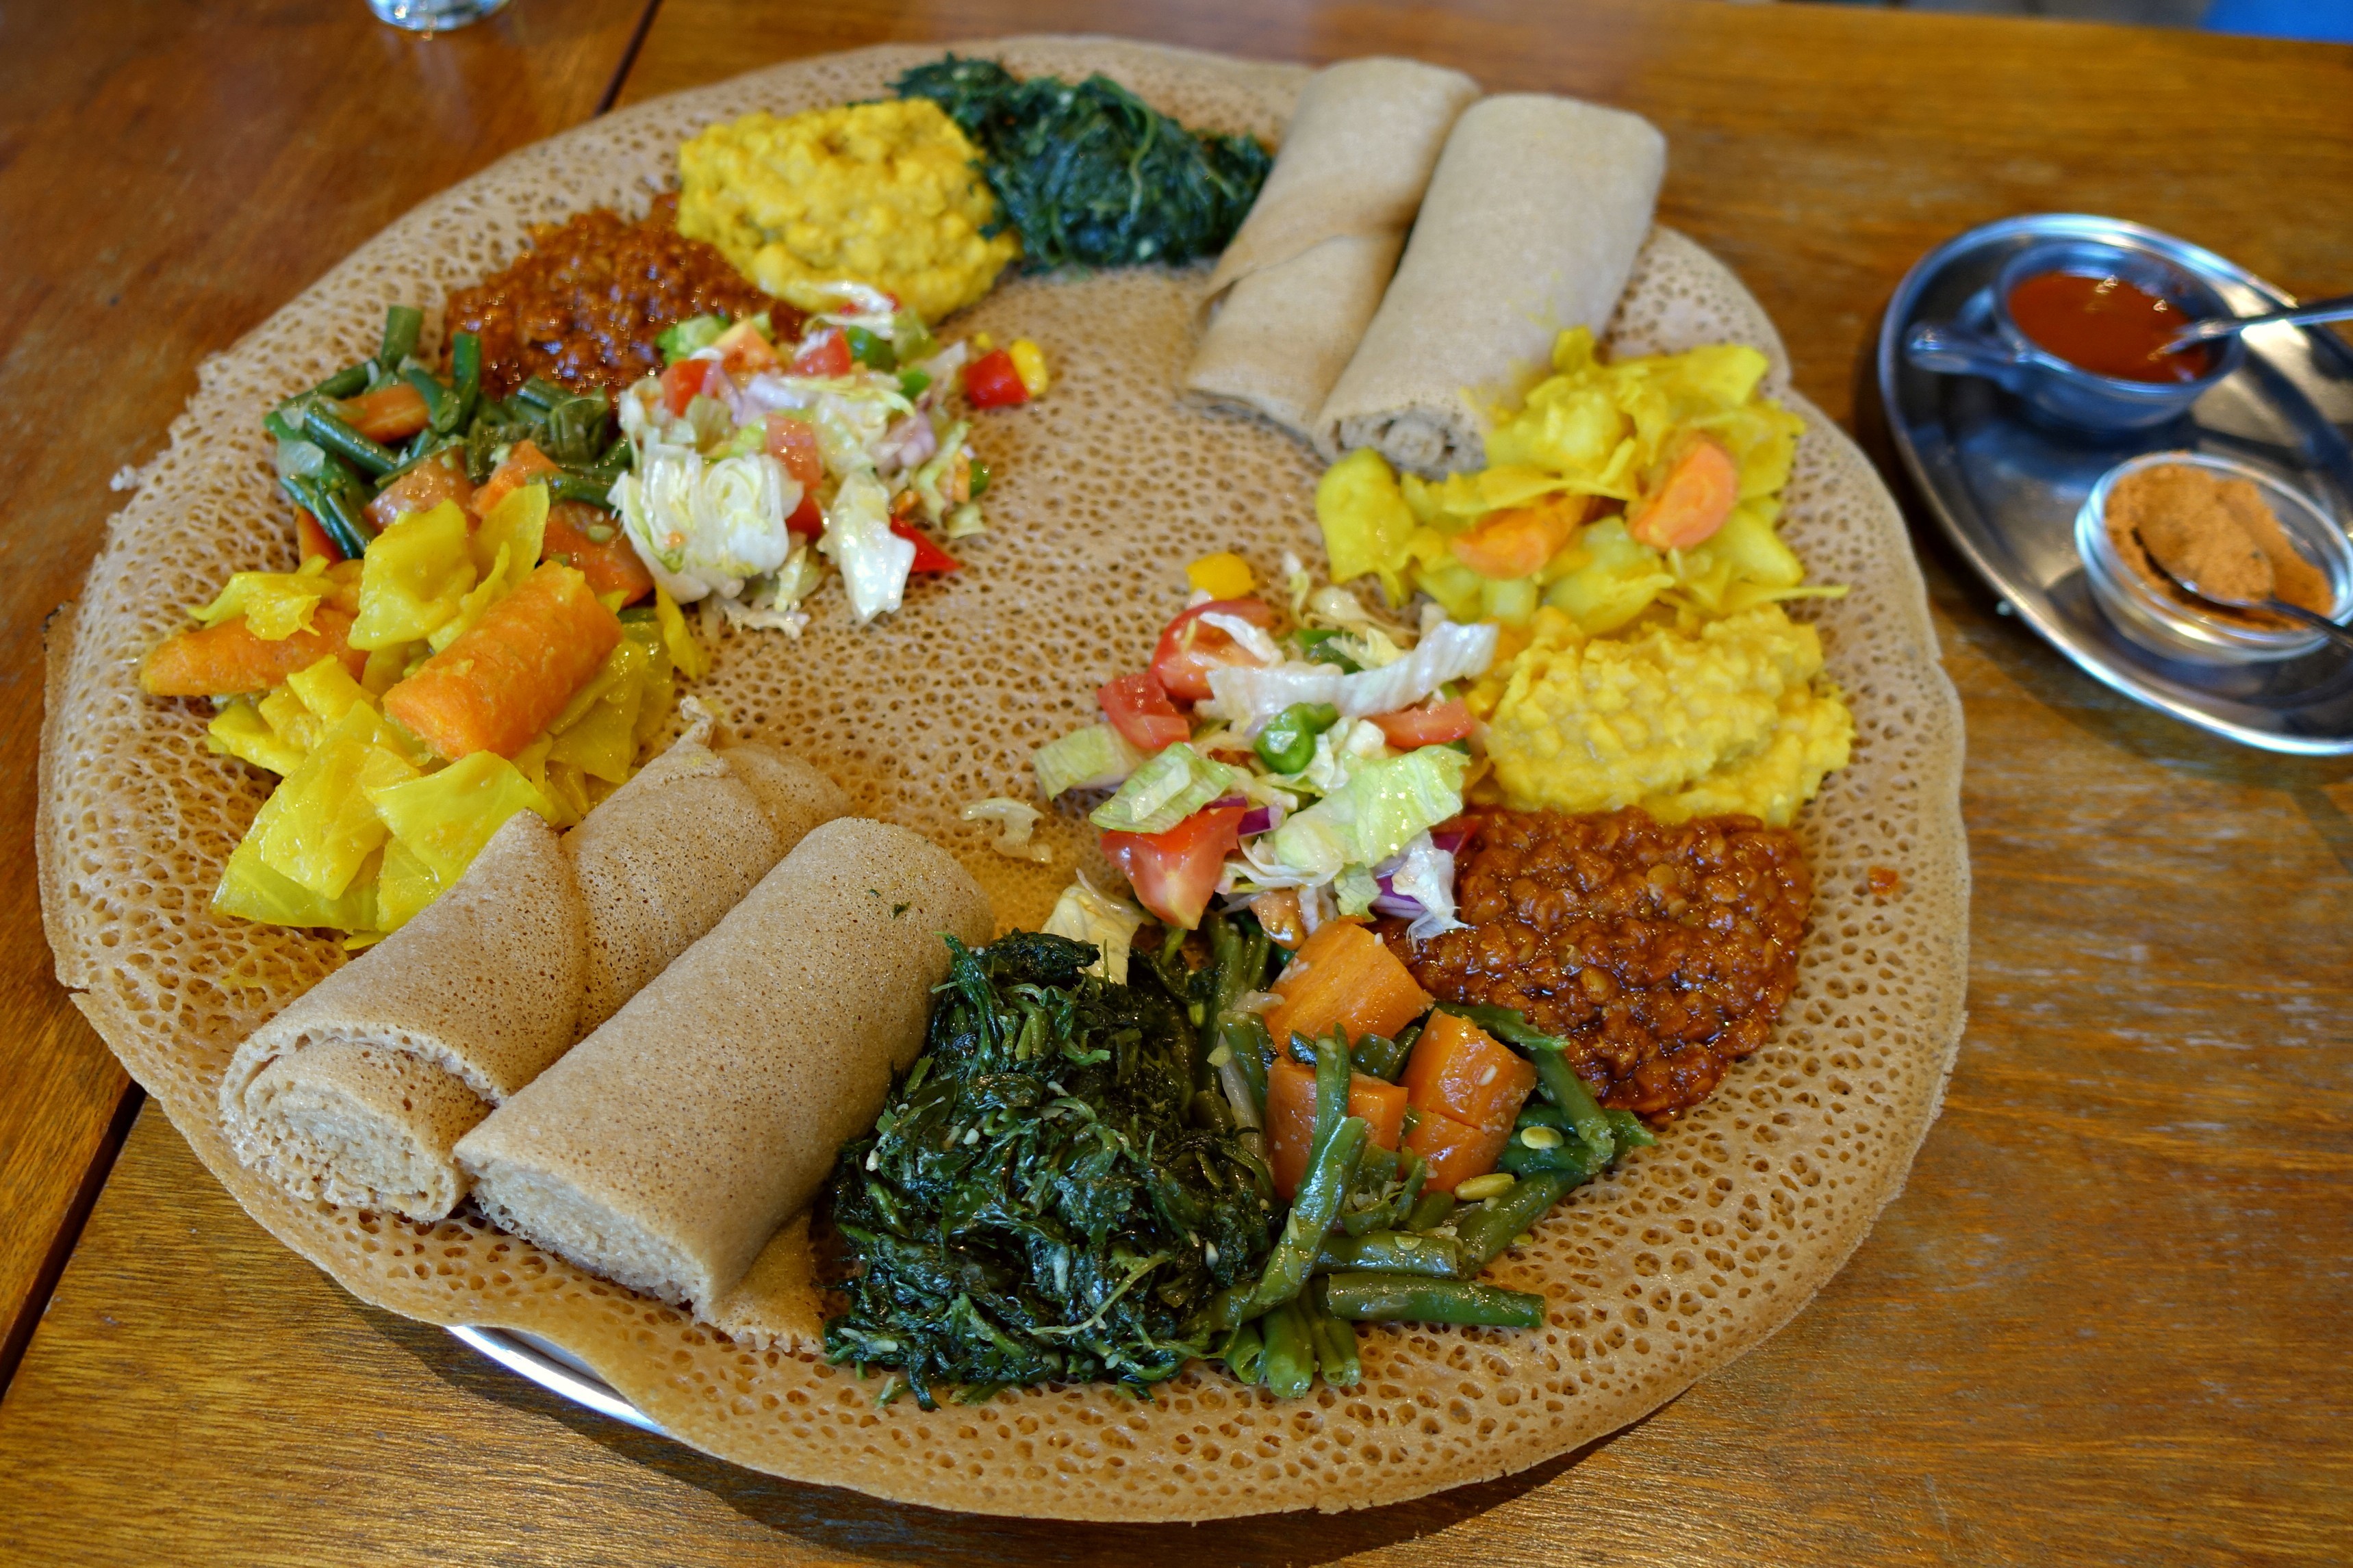 Best east African restaurants in London: Queen of Sheba in Kentish Town